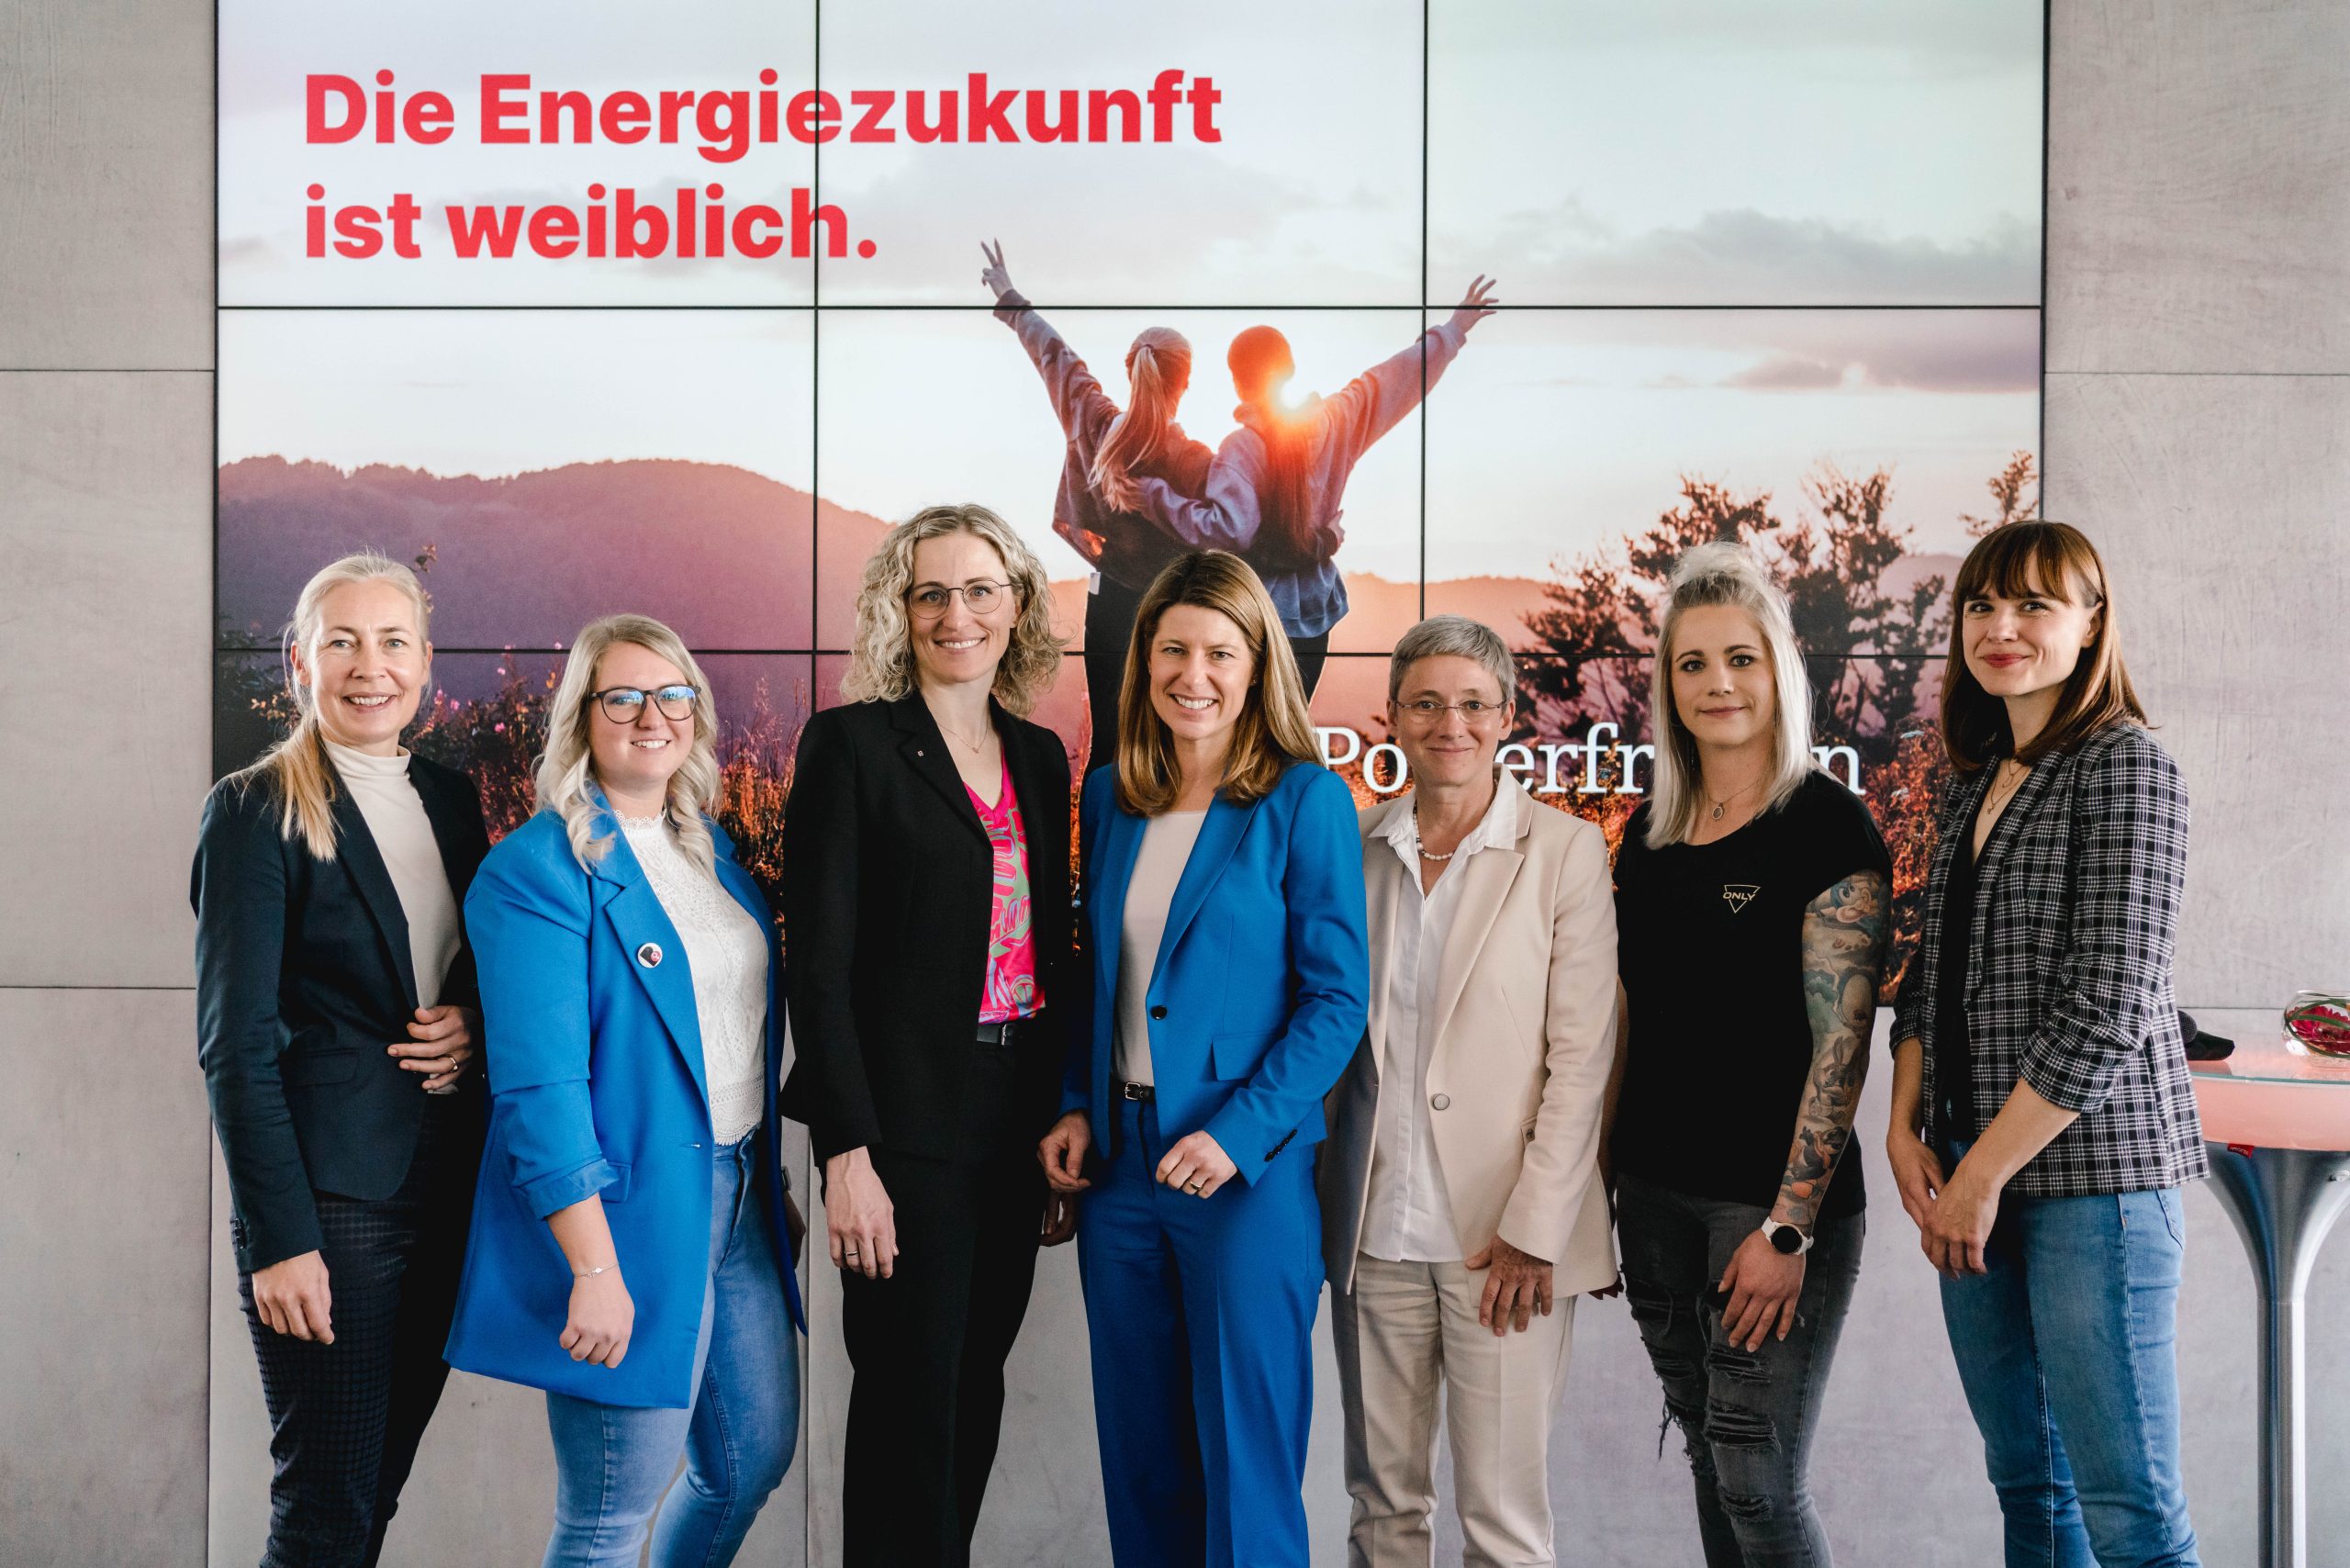 Mehr Frauenpower für die Energiewirtschaft